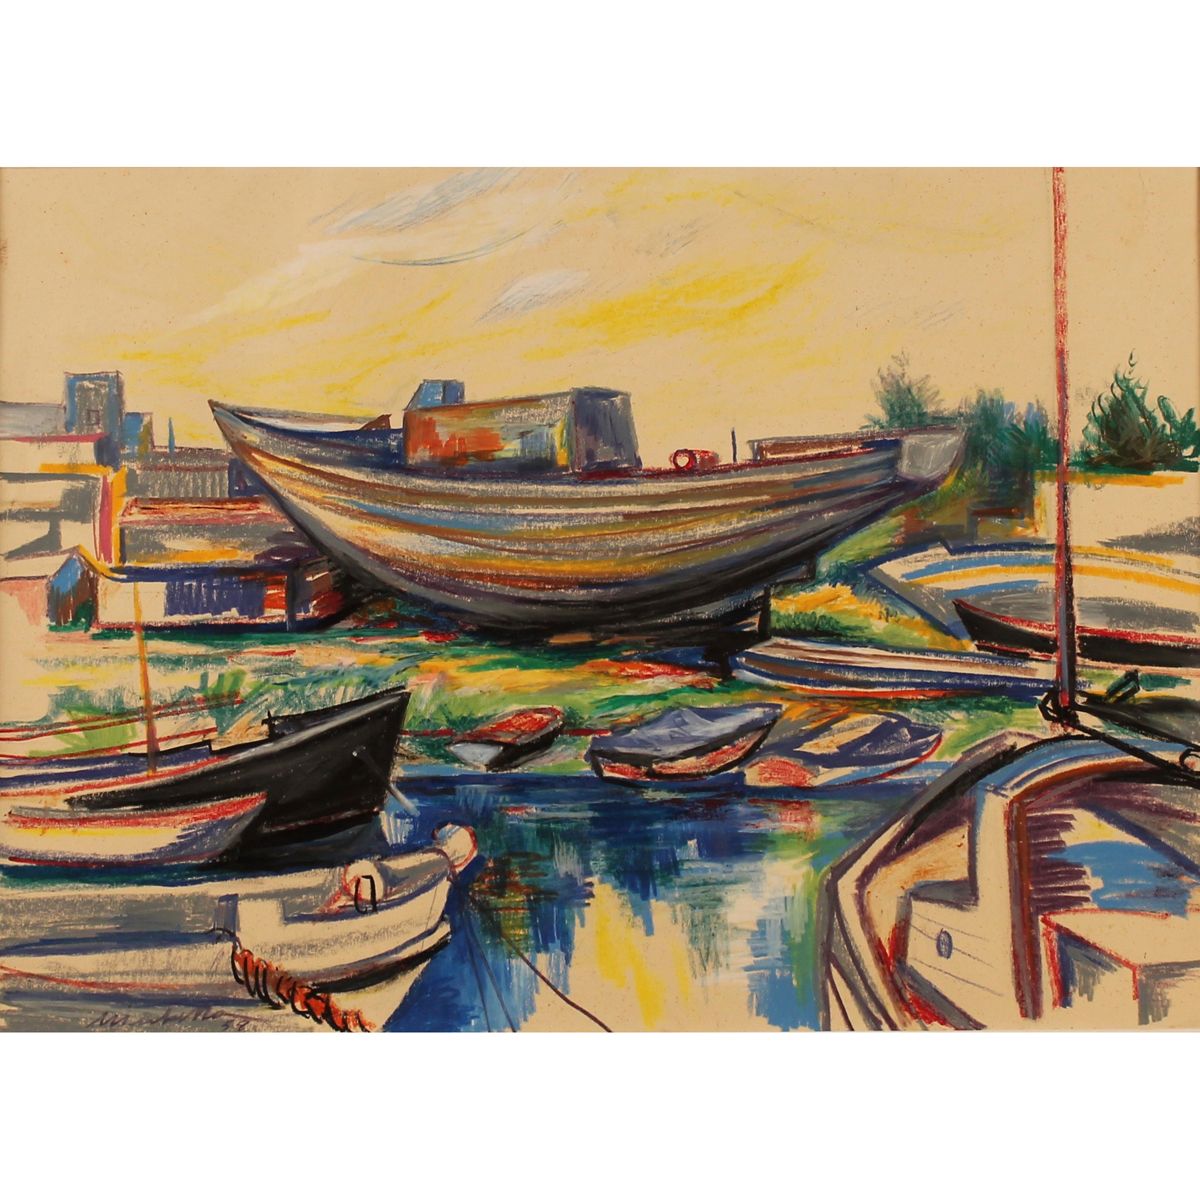 SARO MIRABELLA (1914/1972) "Barche a secco" - "Dry boats" Pastello su carta. Dat&hellip;